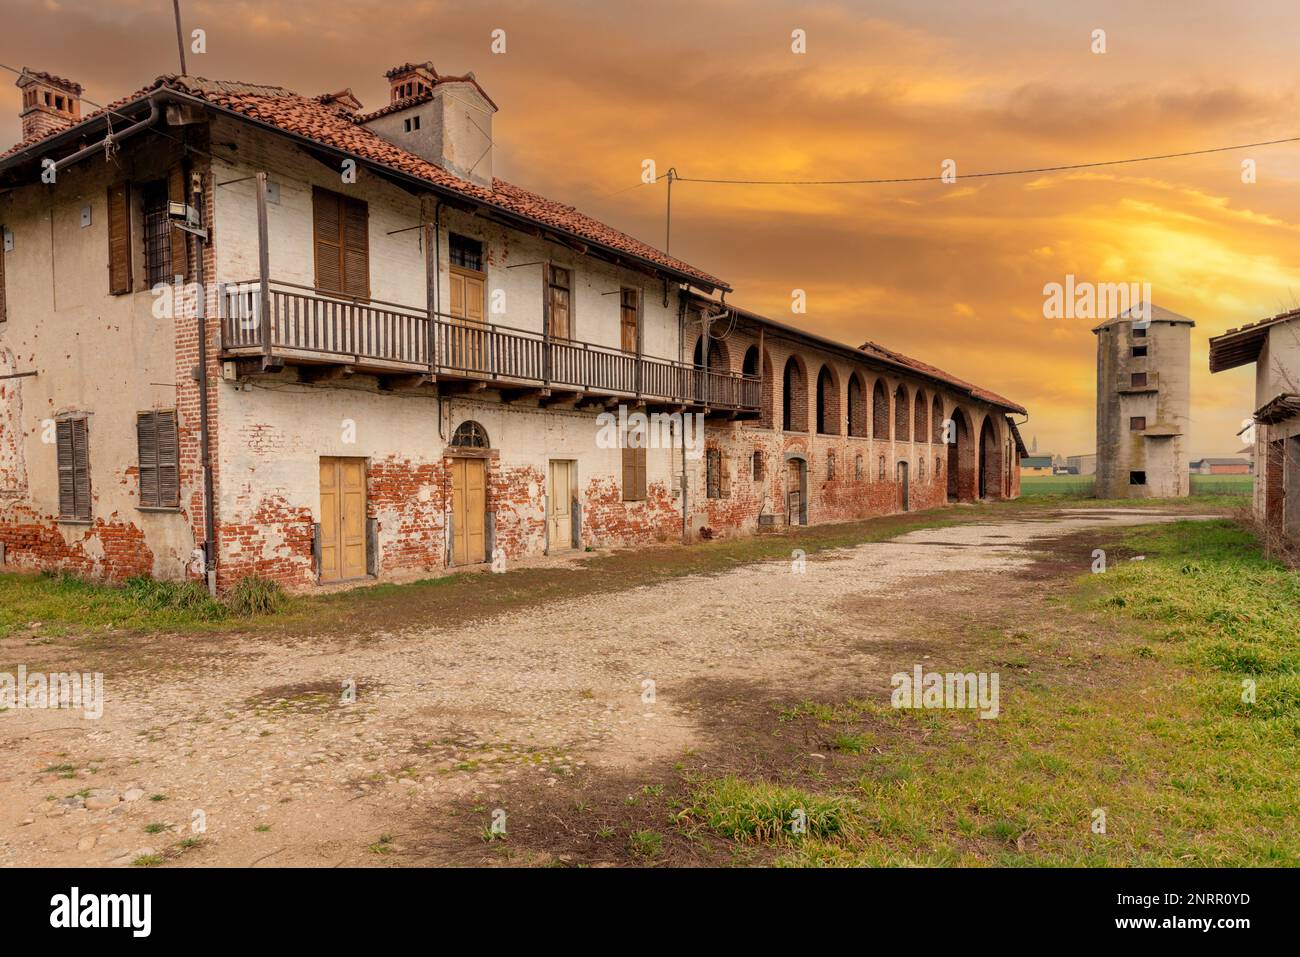 Ancienne ferme abandonnée à l'architecture rurale typique de la vallée du po dans la province de Cuneo, en Italie. Logement rural avec stable et grange sous br Banque D'Images